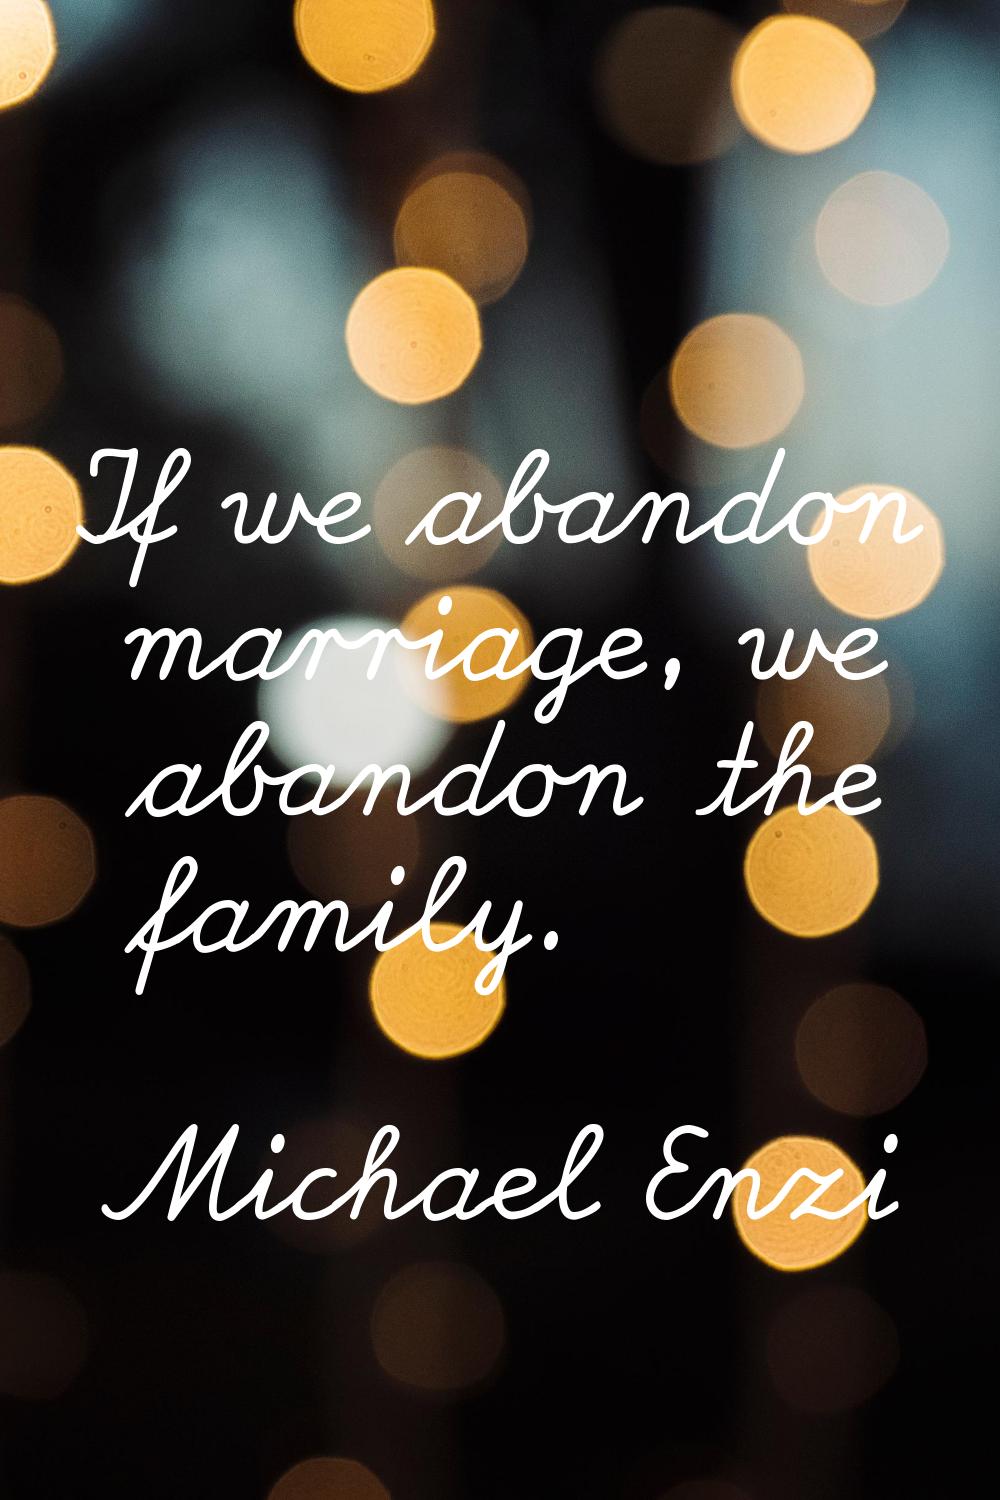 If we abandon marriage, we abandon the family.